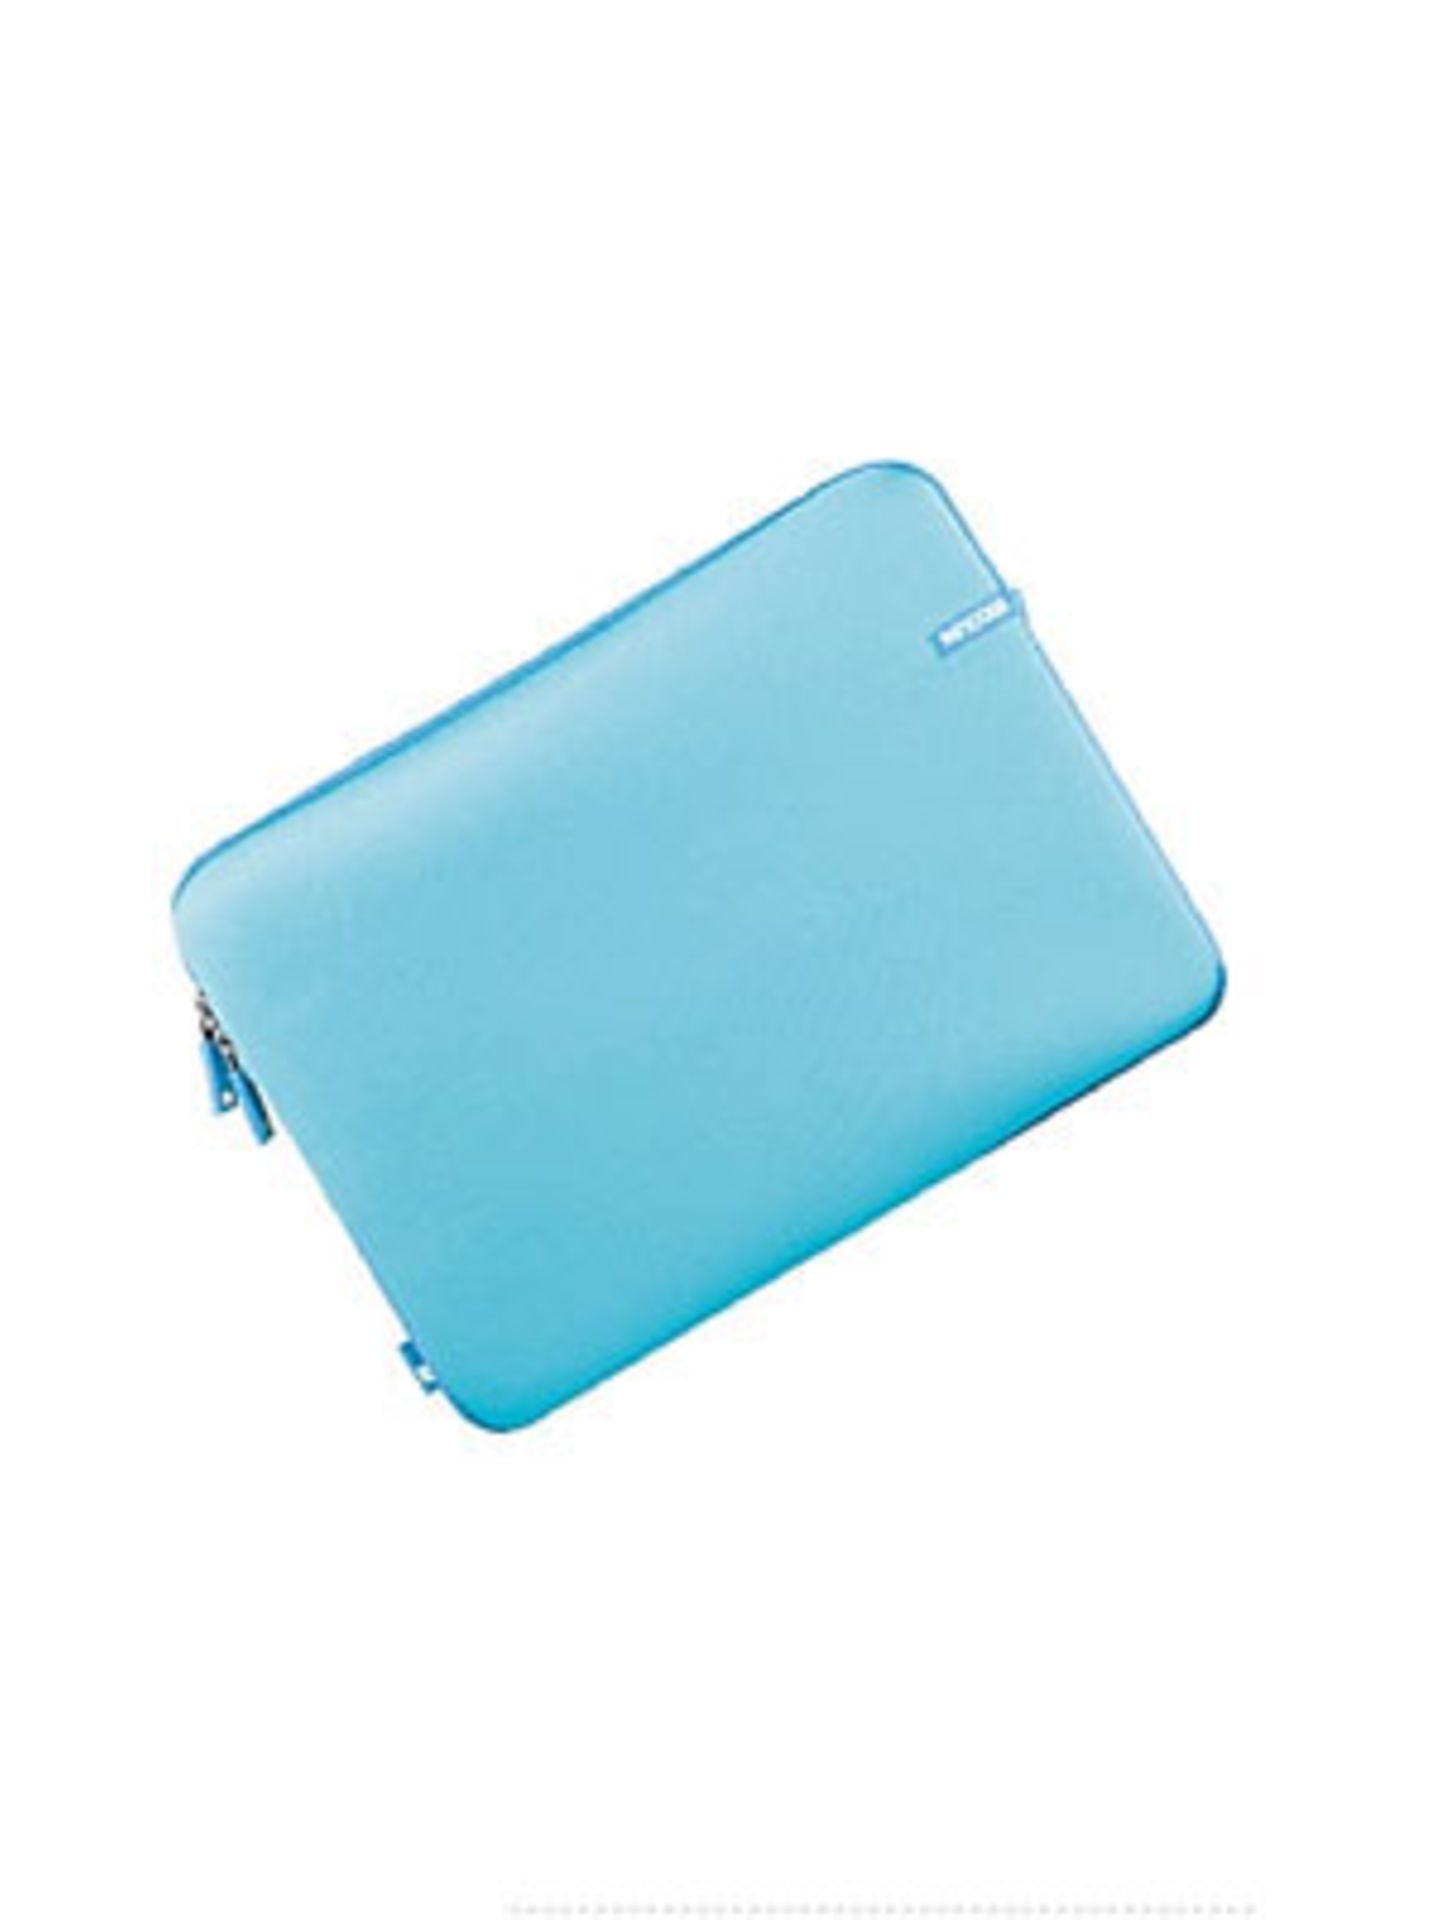 Stabiles Laptopcase in hellem Blau für 15"-Notebooks von Incase, um 35 Euro. Über Frontlineshop.